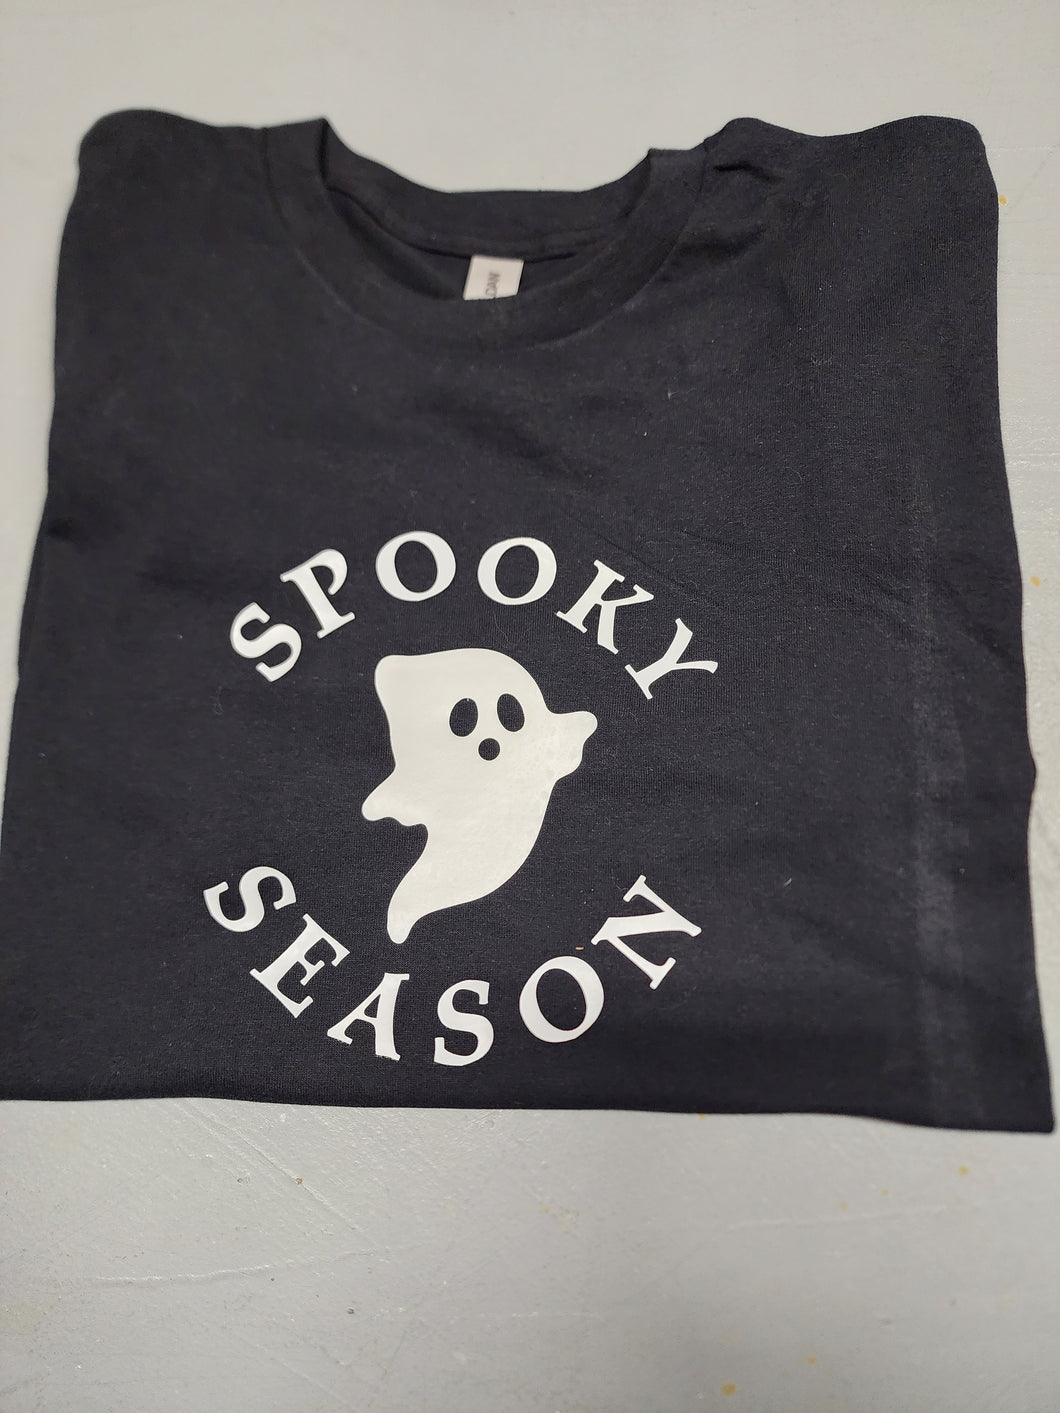 Spooky Season tshirt